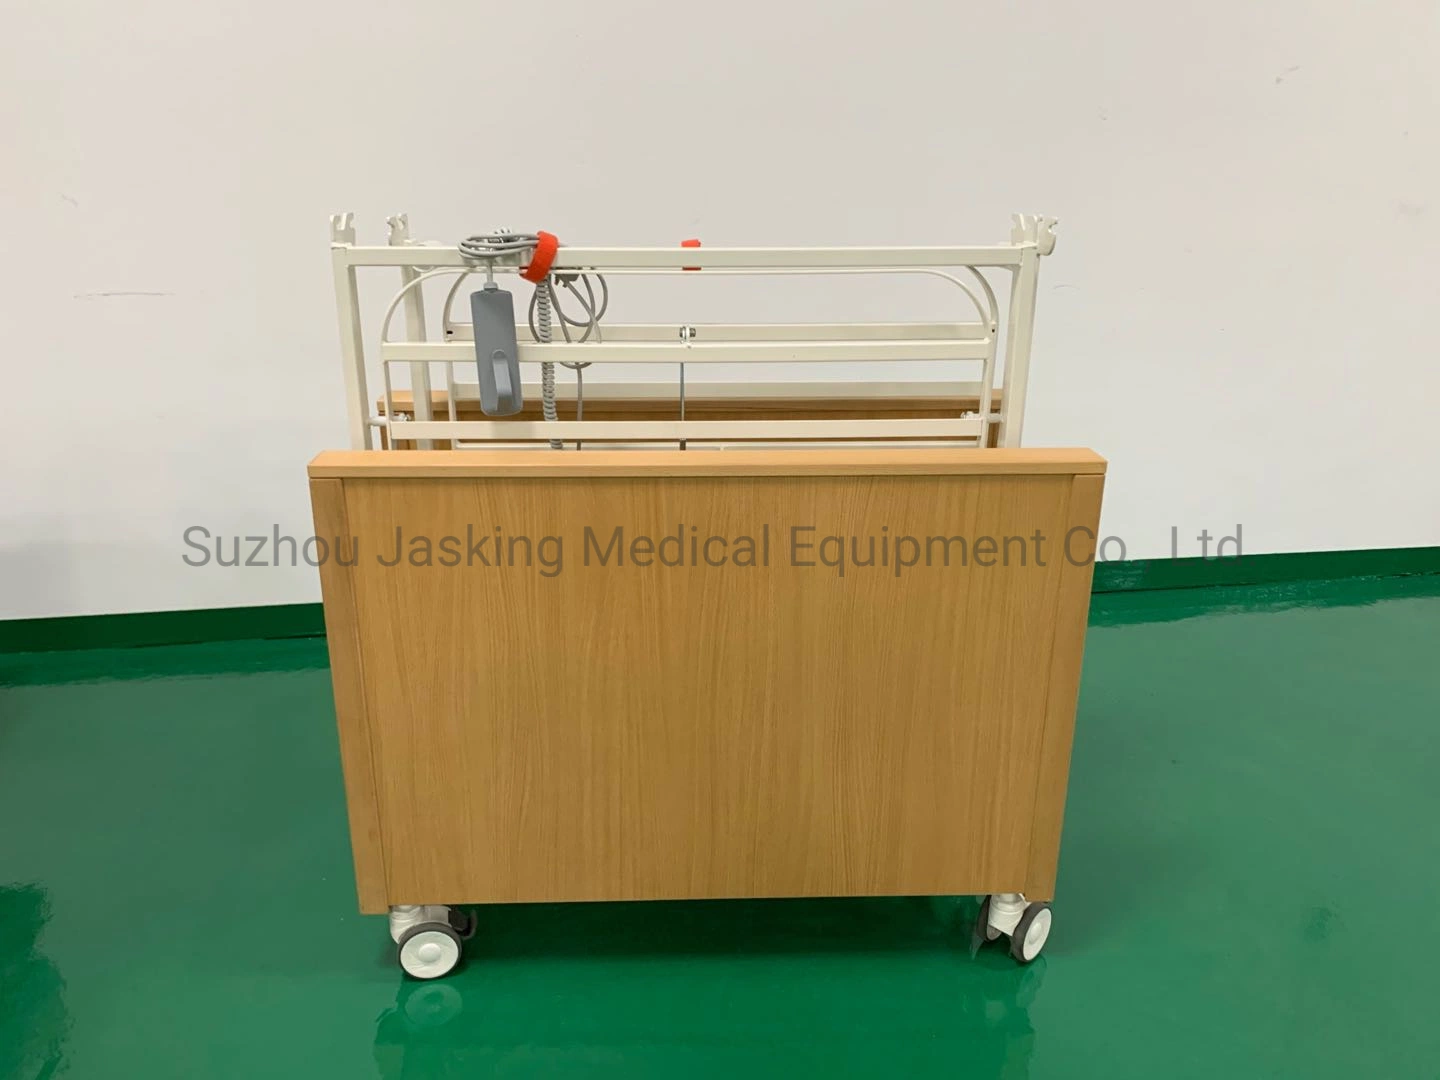 فراش مستشفى تمريض كهربائي قابل للطي بخمس وظائف (JX-2337WMF4)